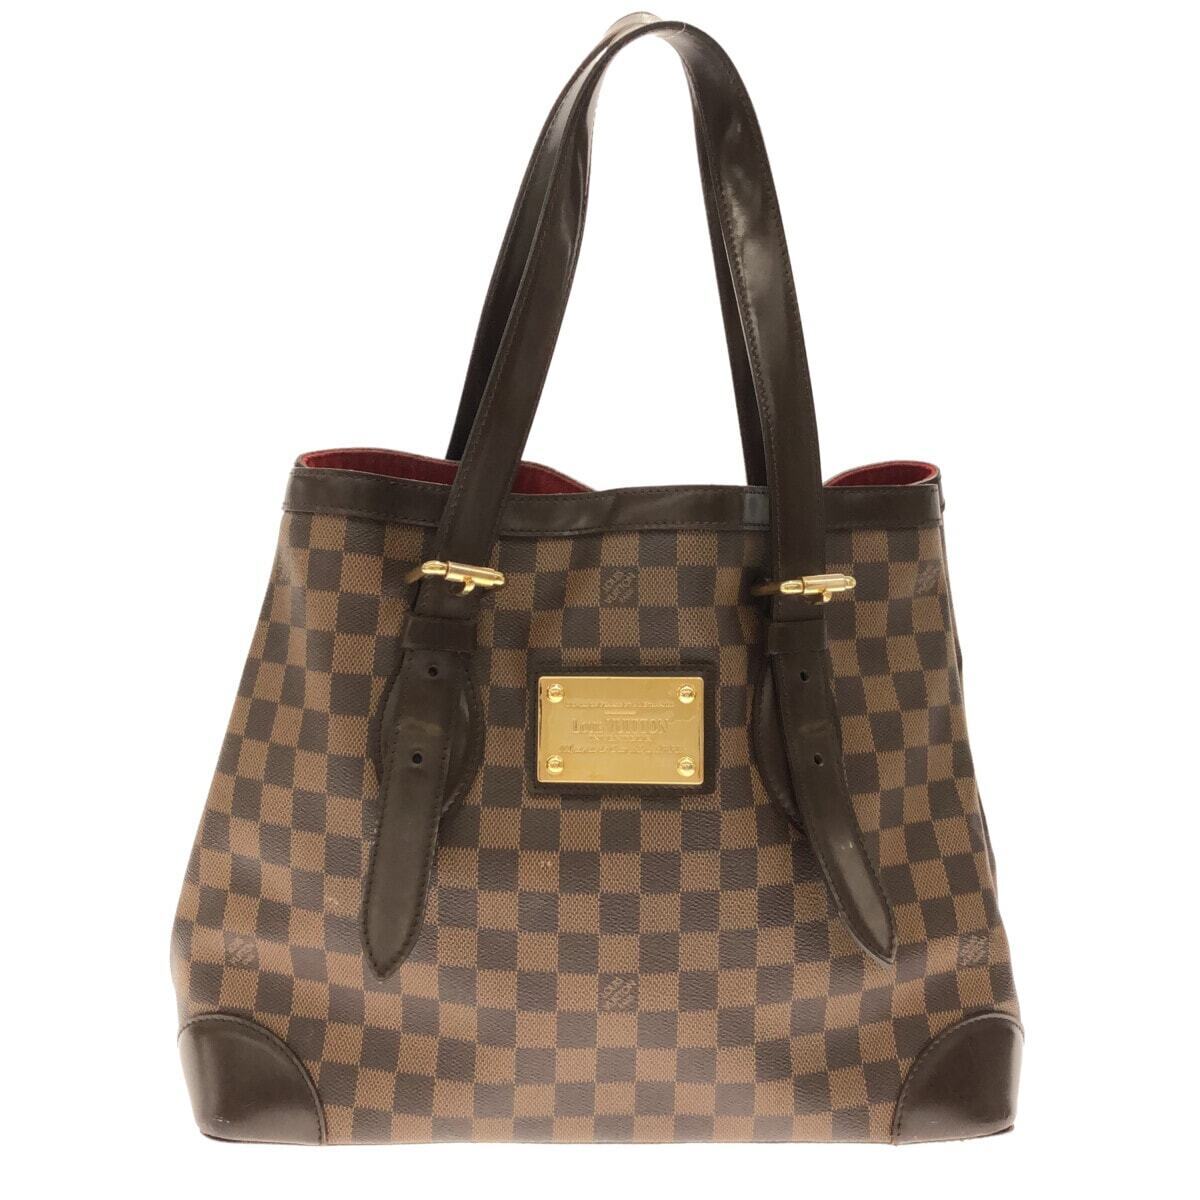 Authentic Louis Vuitton Damier Azur Hampstead MM Tote Bag N51206 